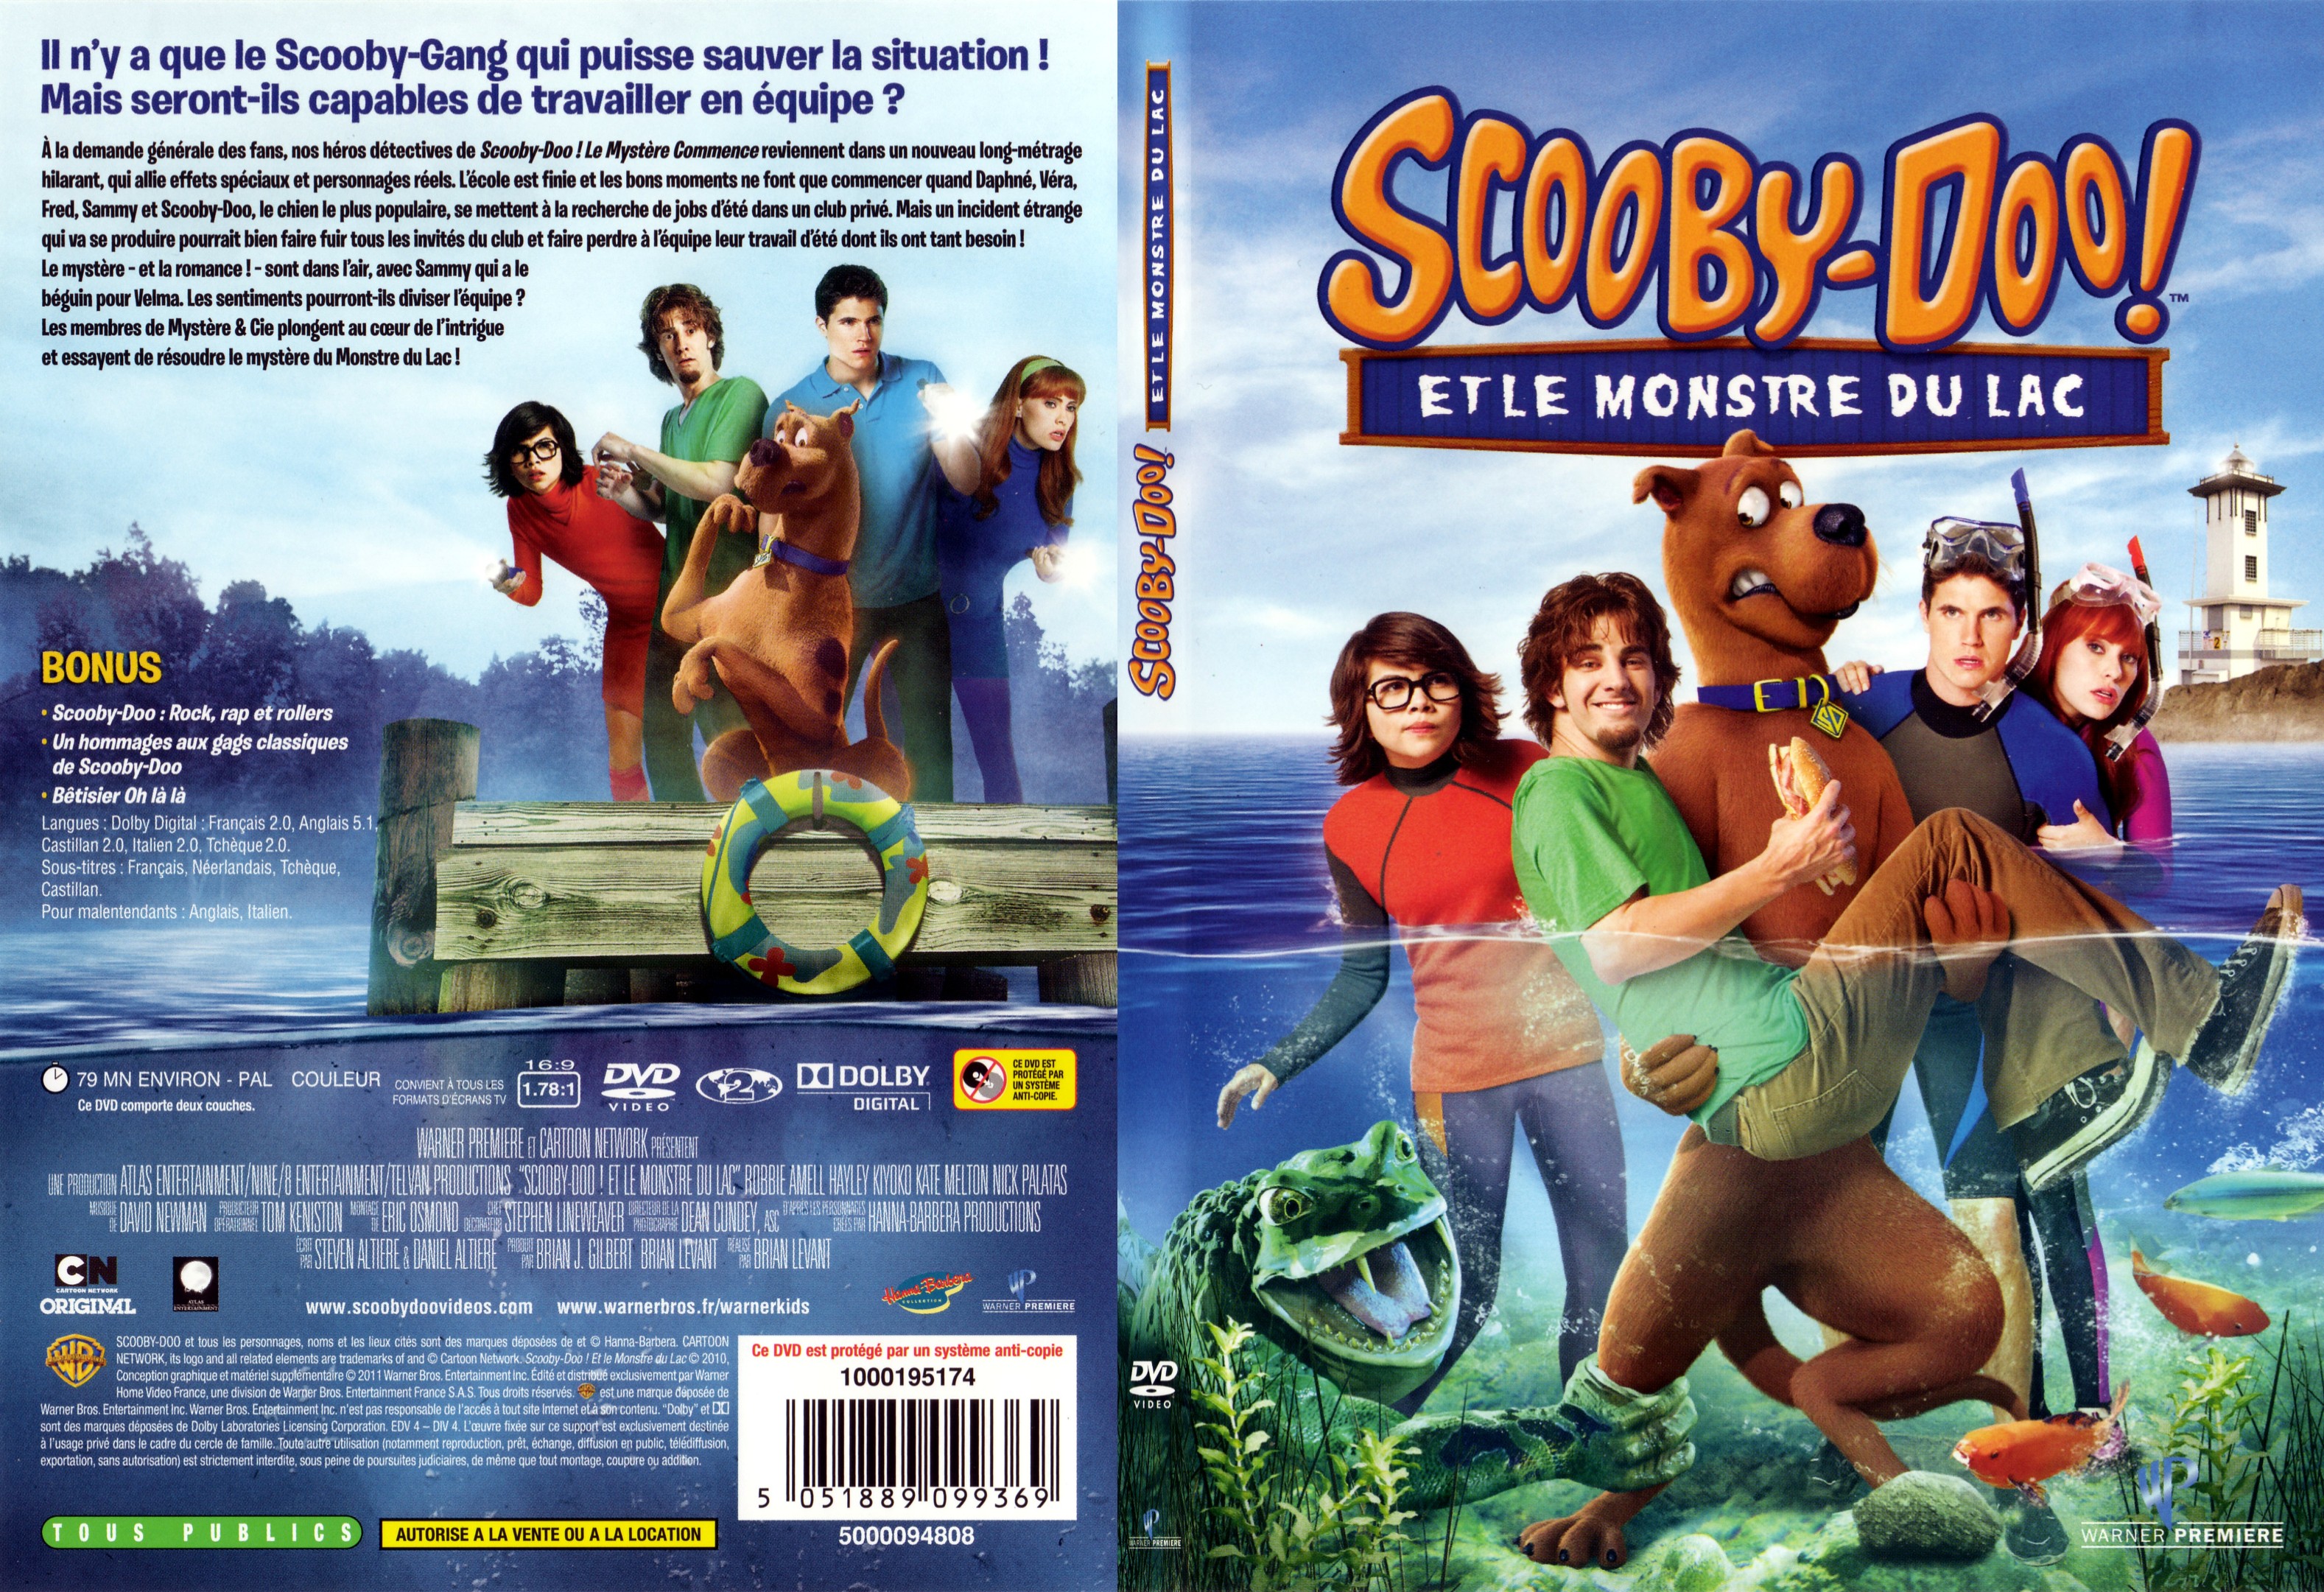 Jaquette DVD Scooby-doo et le monstre du lac - SLIM